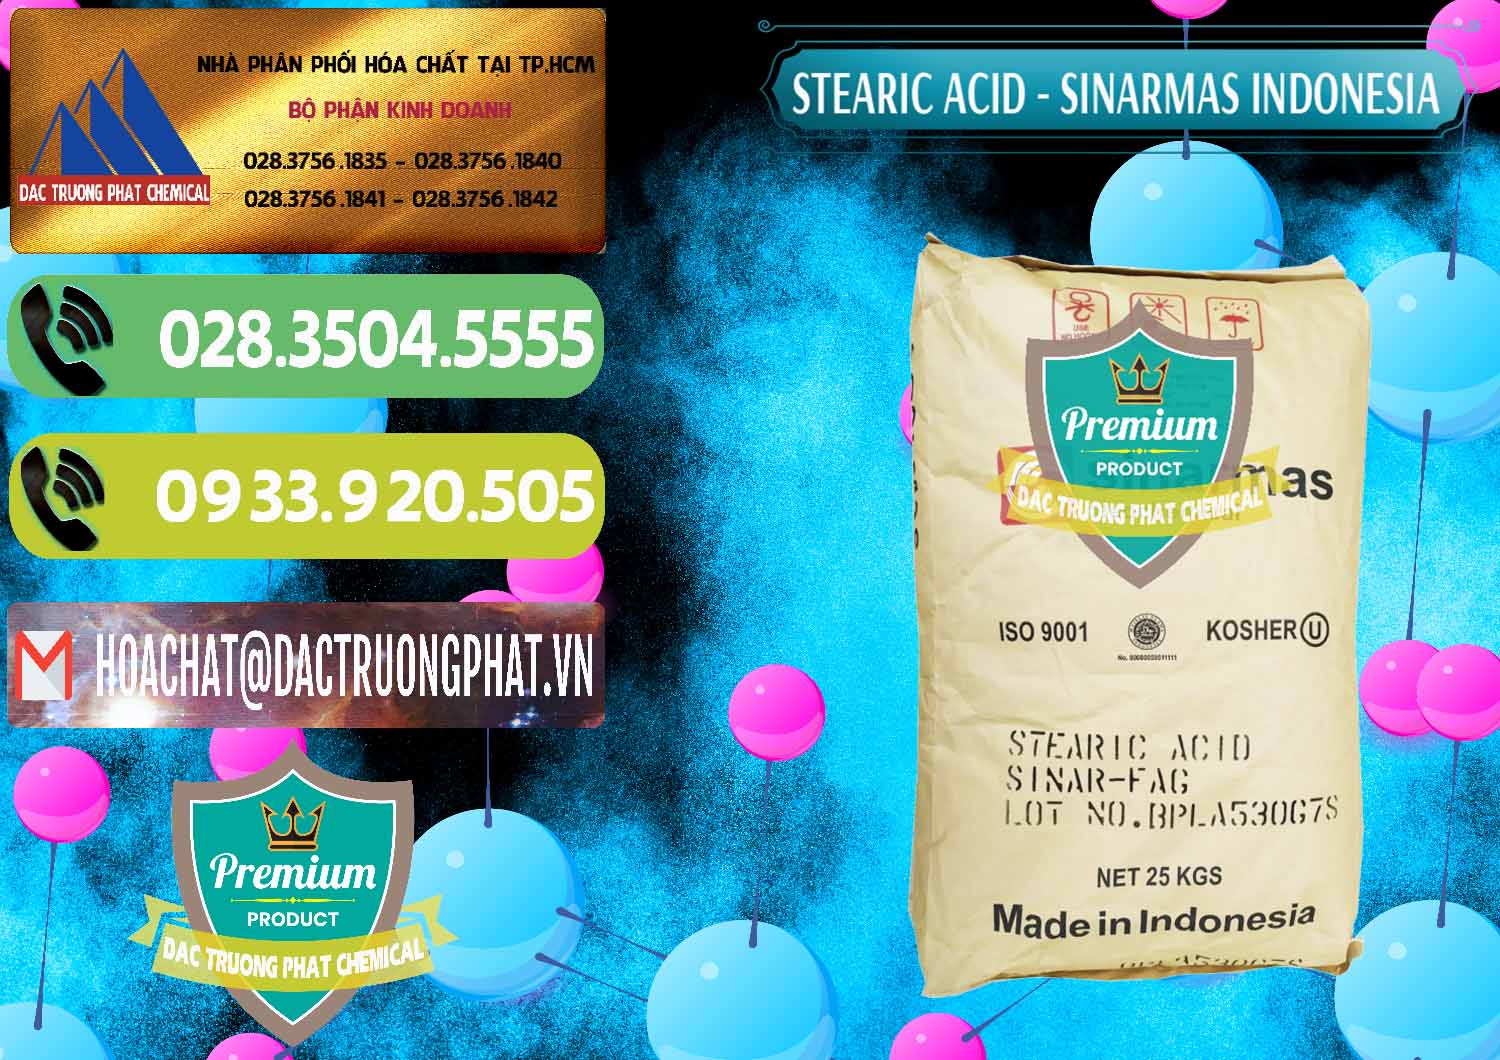 Cty nhập khẩu và bán Axit Stearic - Stearic Acid Sinarmas Indonesia - 0389 - Cty chuyên phân phối ( kinh doanh ) hóa chất tại TP.HCM - hoachatmientay.vn